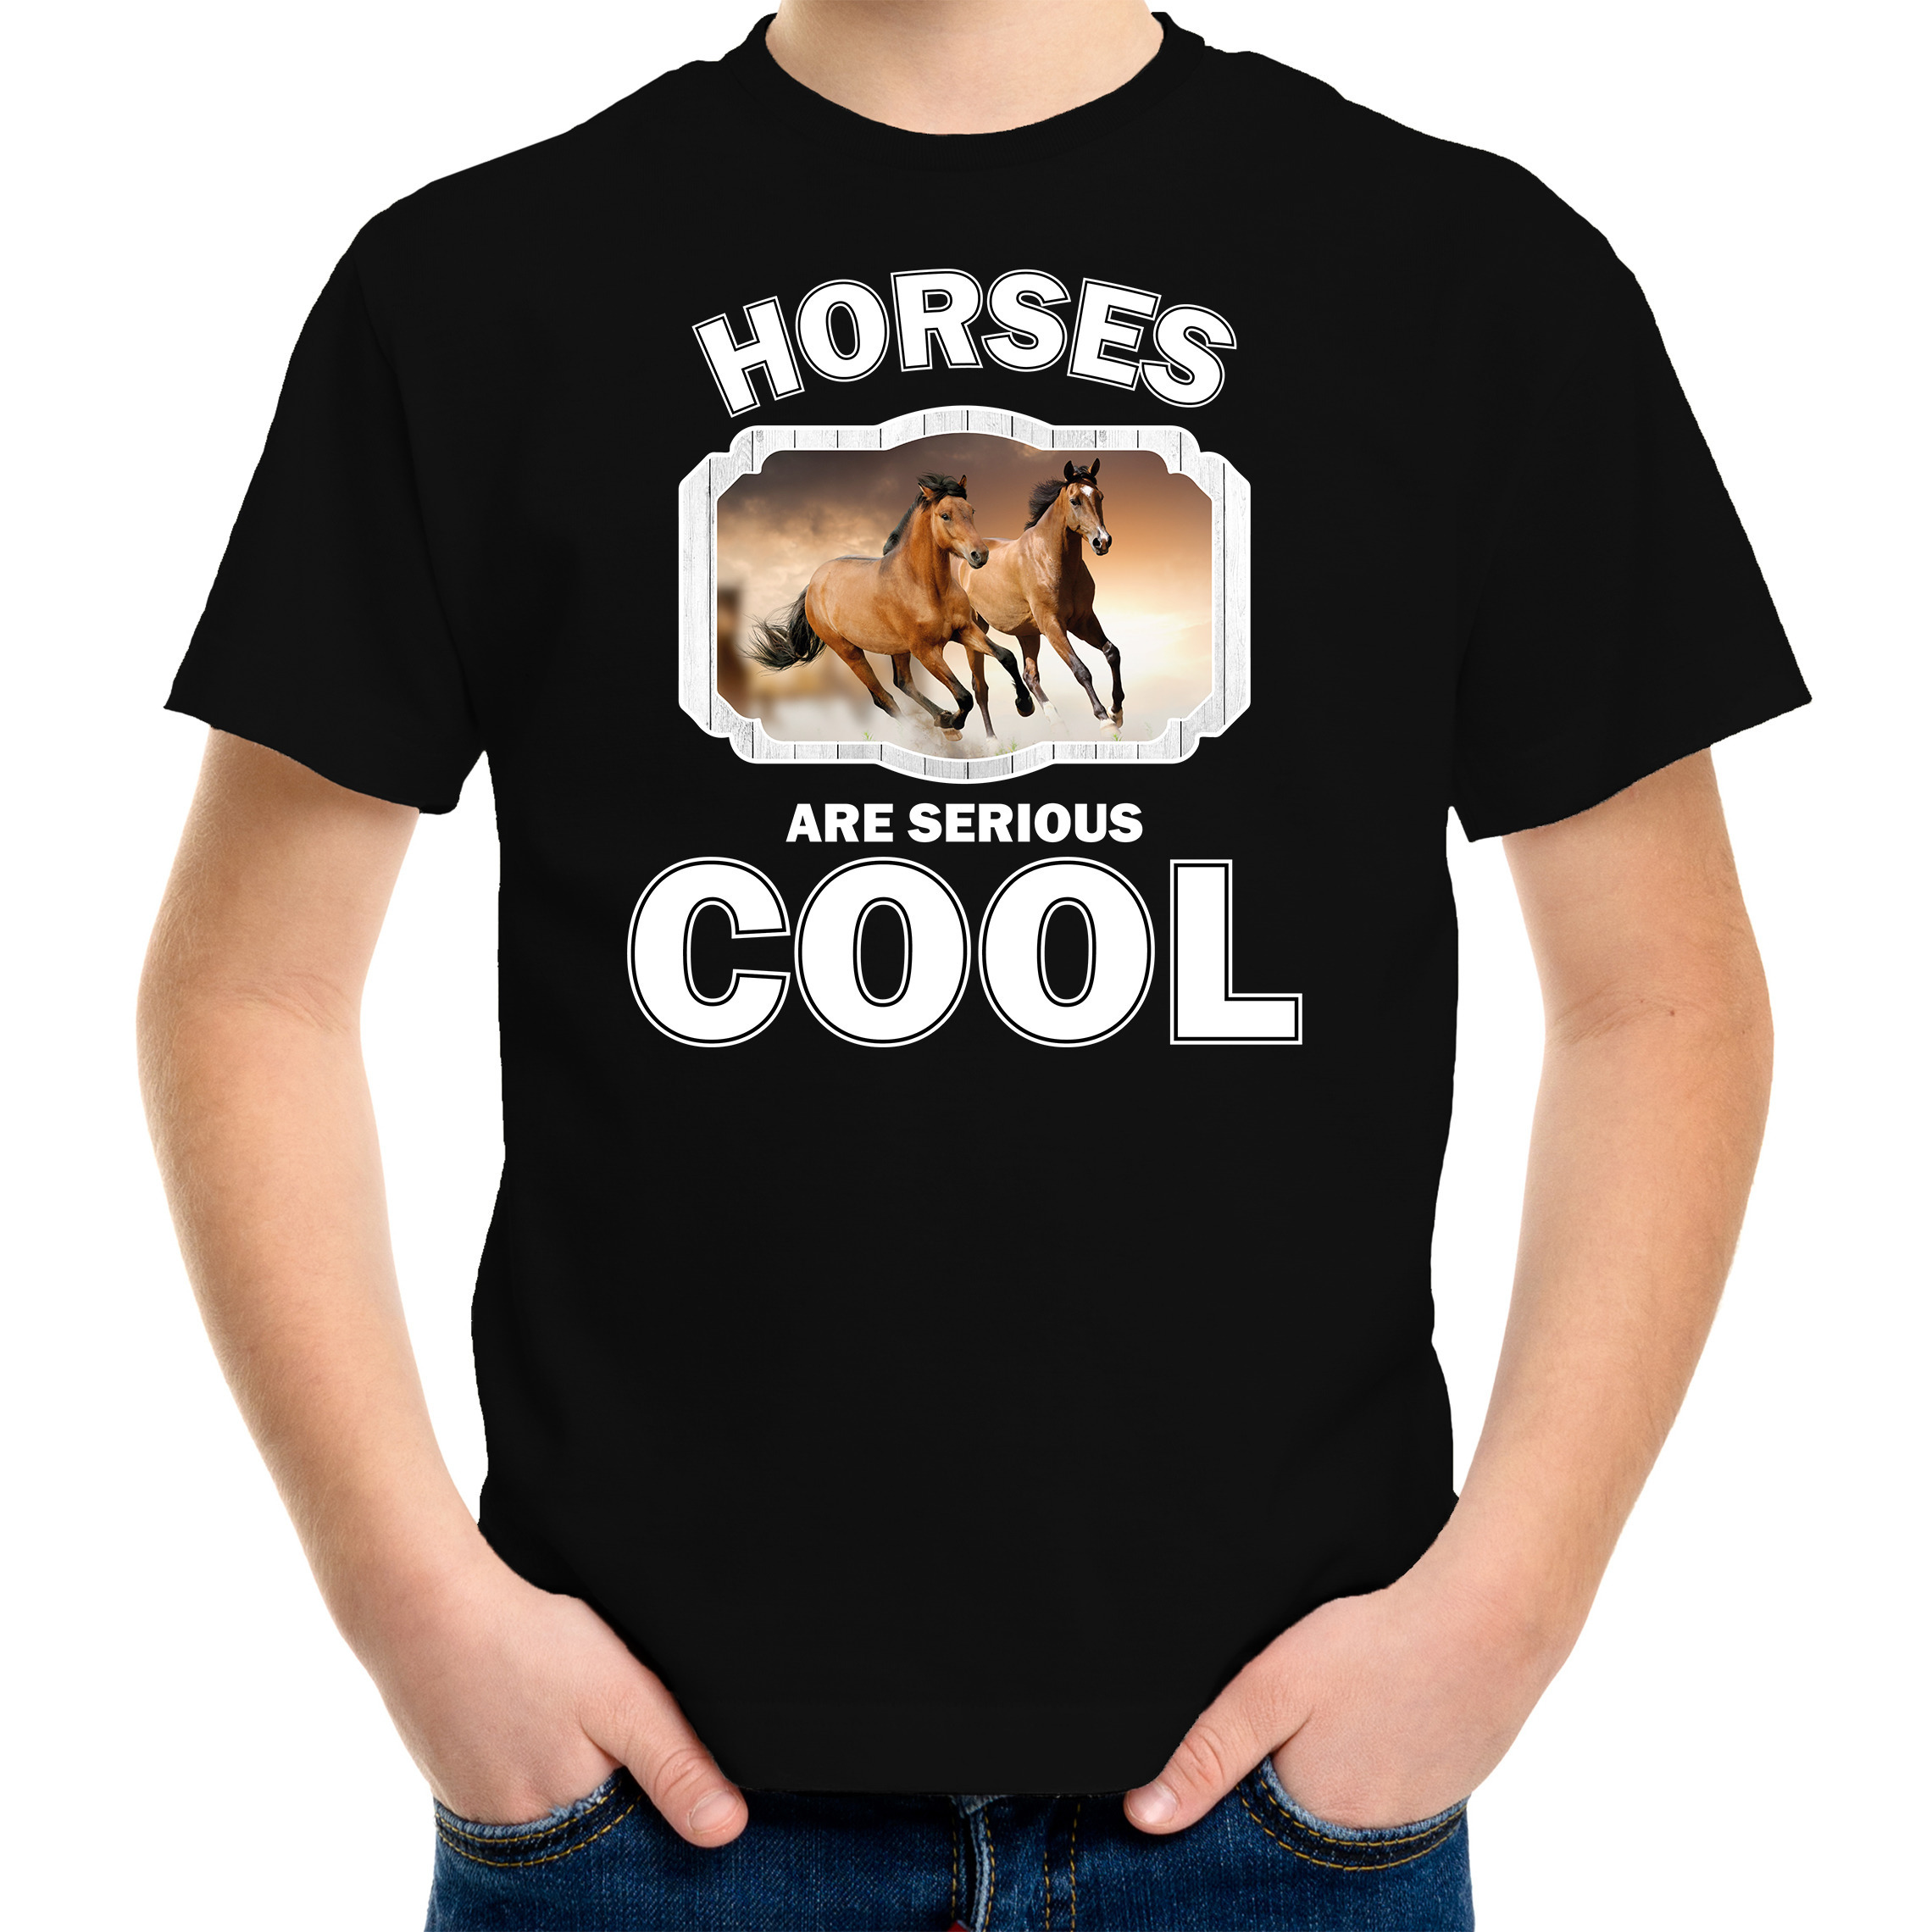 Dieren bruin paard t-shirt zwart kinderen - horses are cool shirt jongens en meisjes